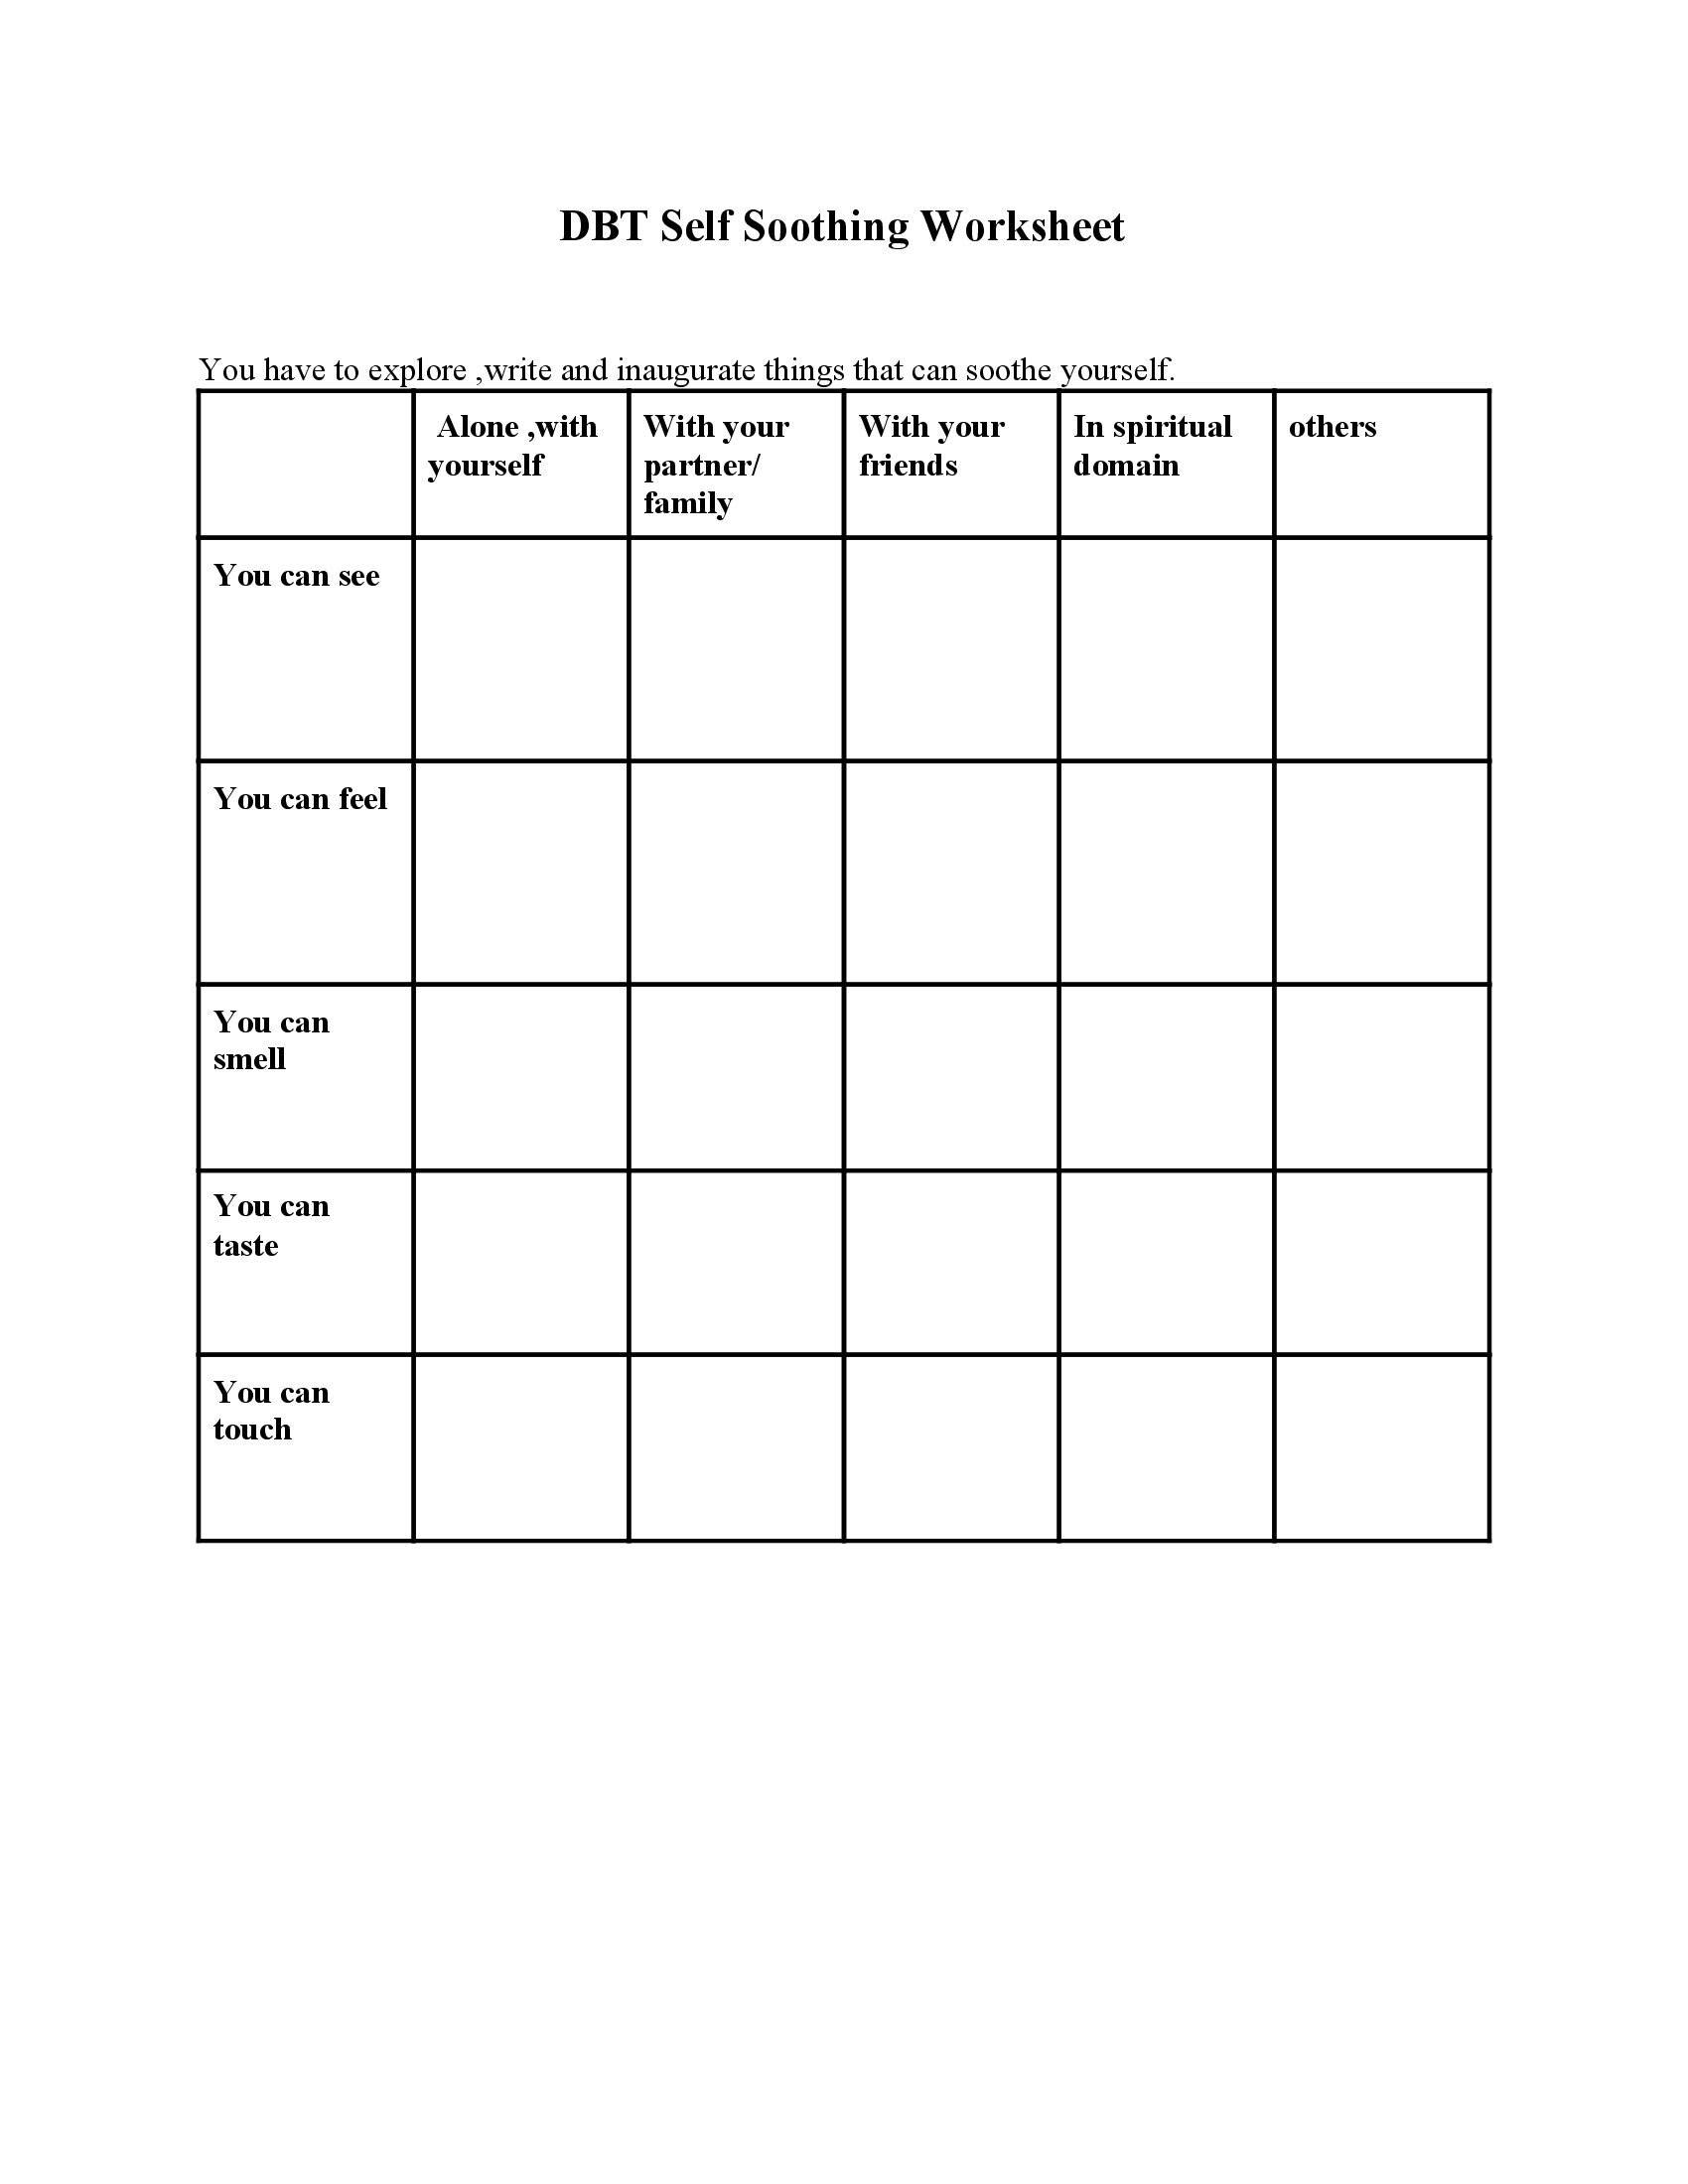 DBT Self Soothing Worksheet Mental Health Worksheets